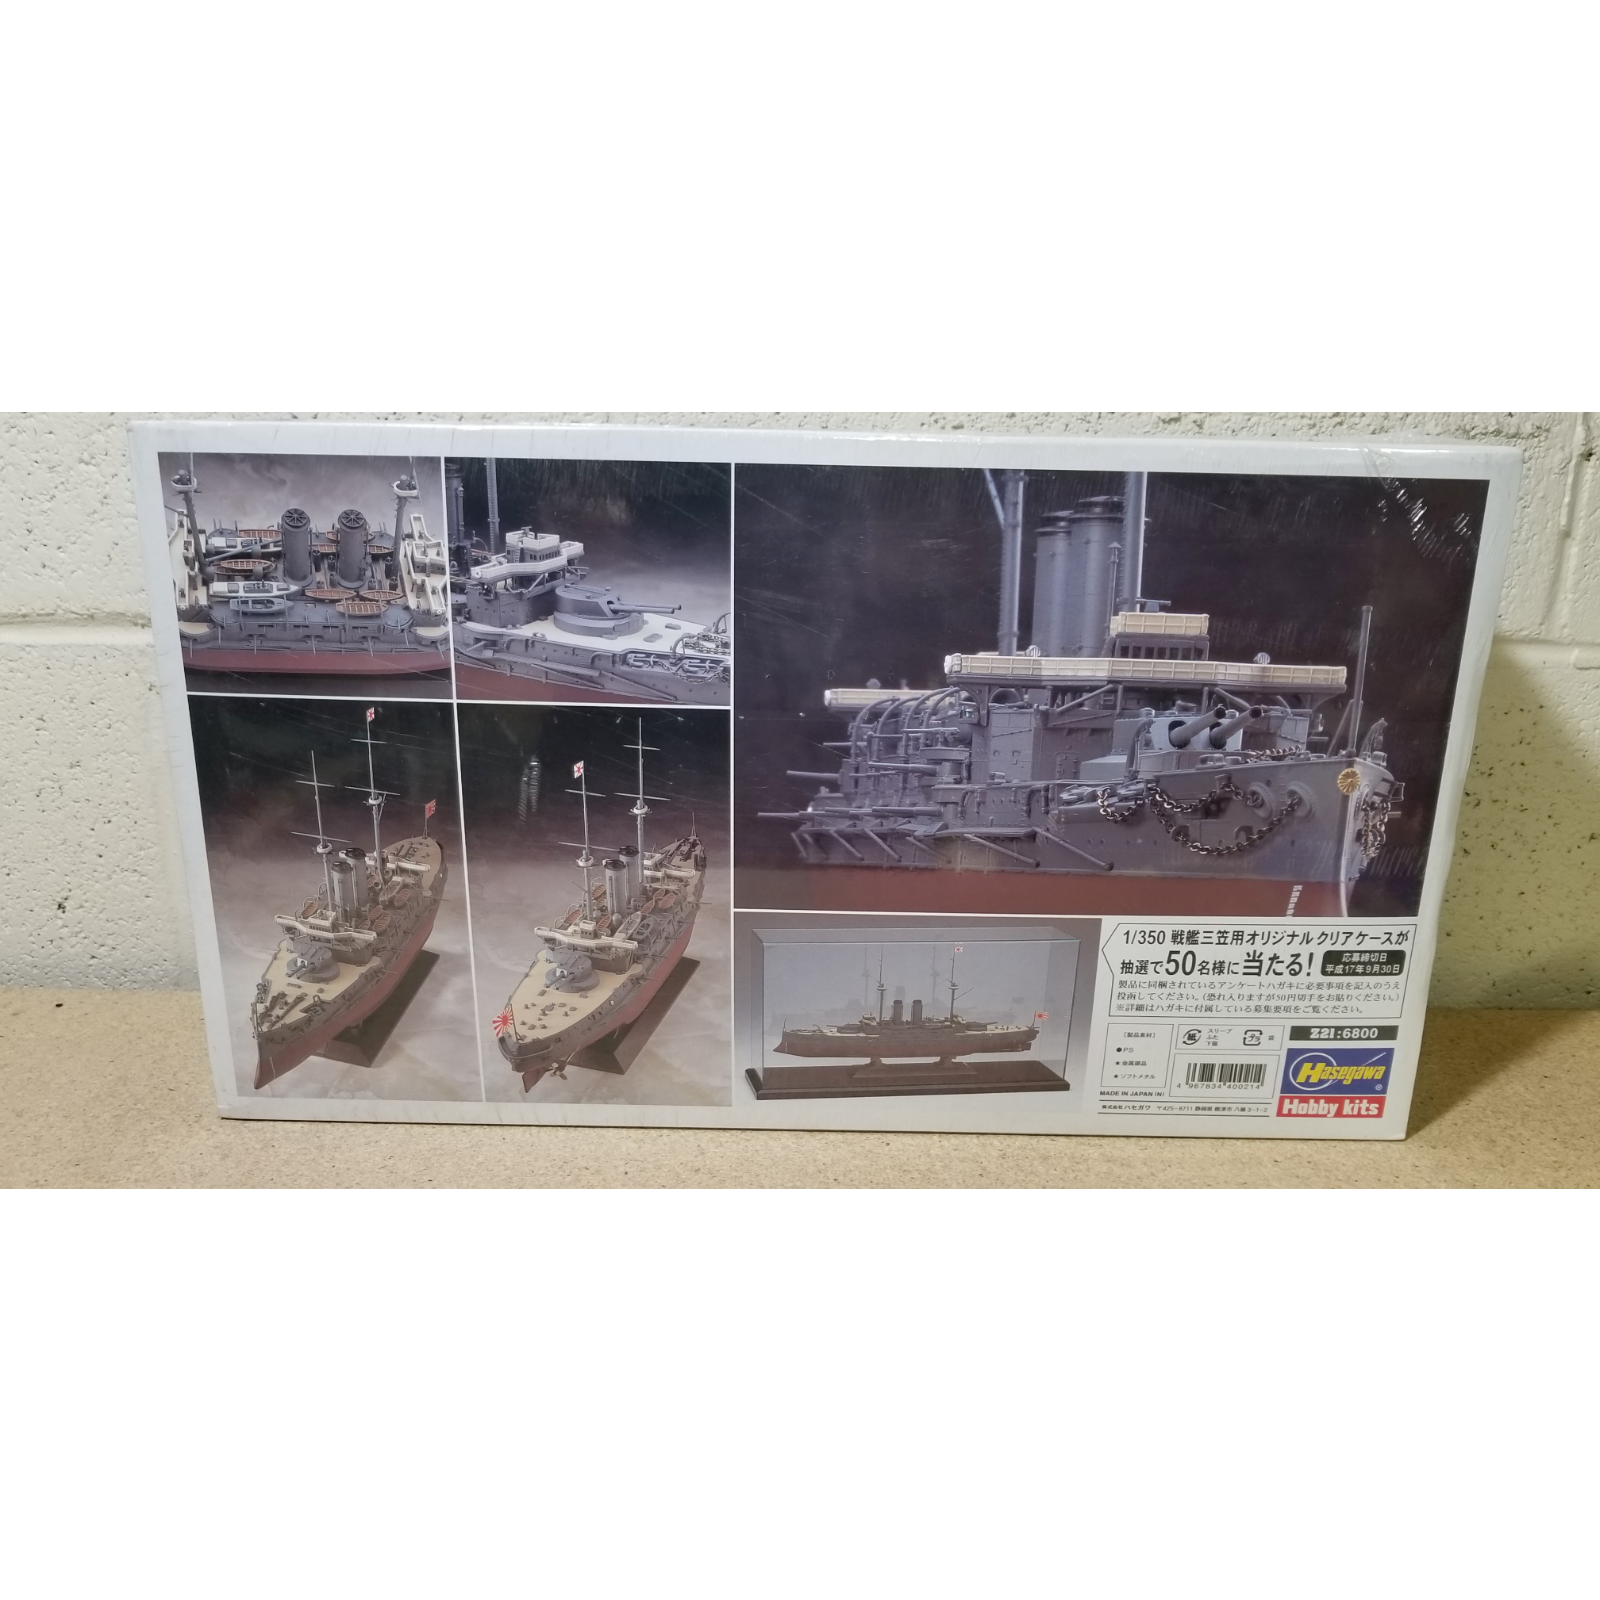 1/350 Scale Hasegawa Z216800 IJN Battleship Mikasa